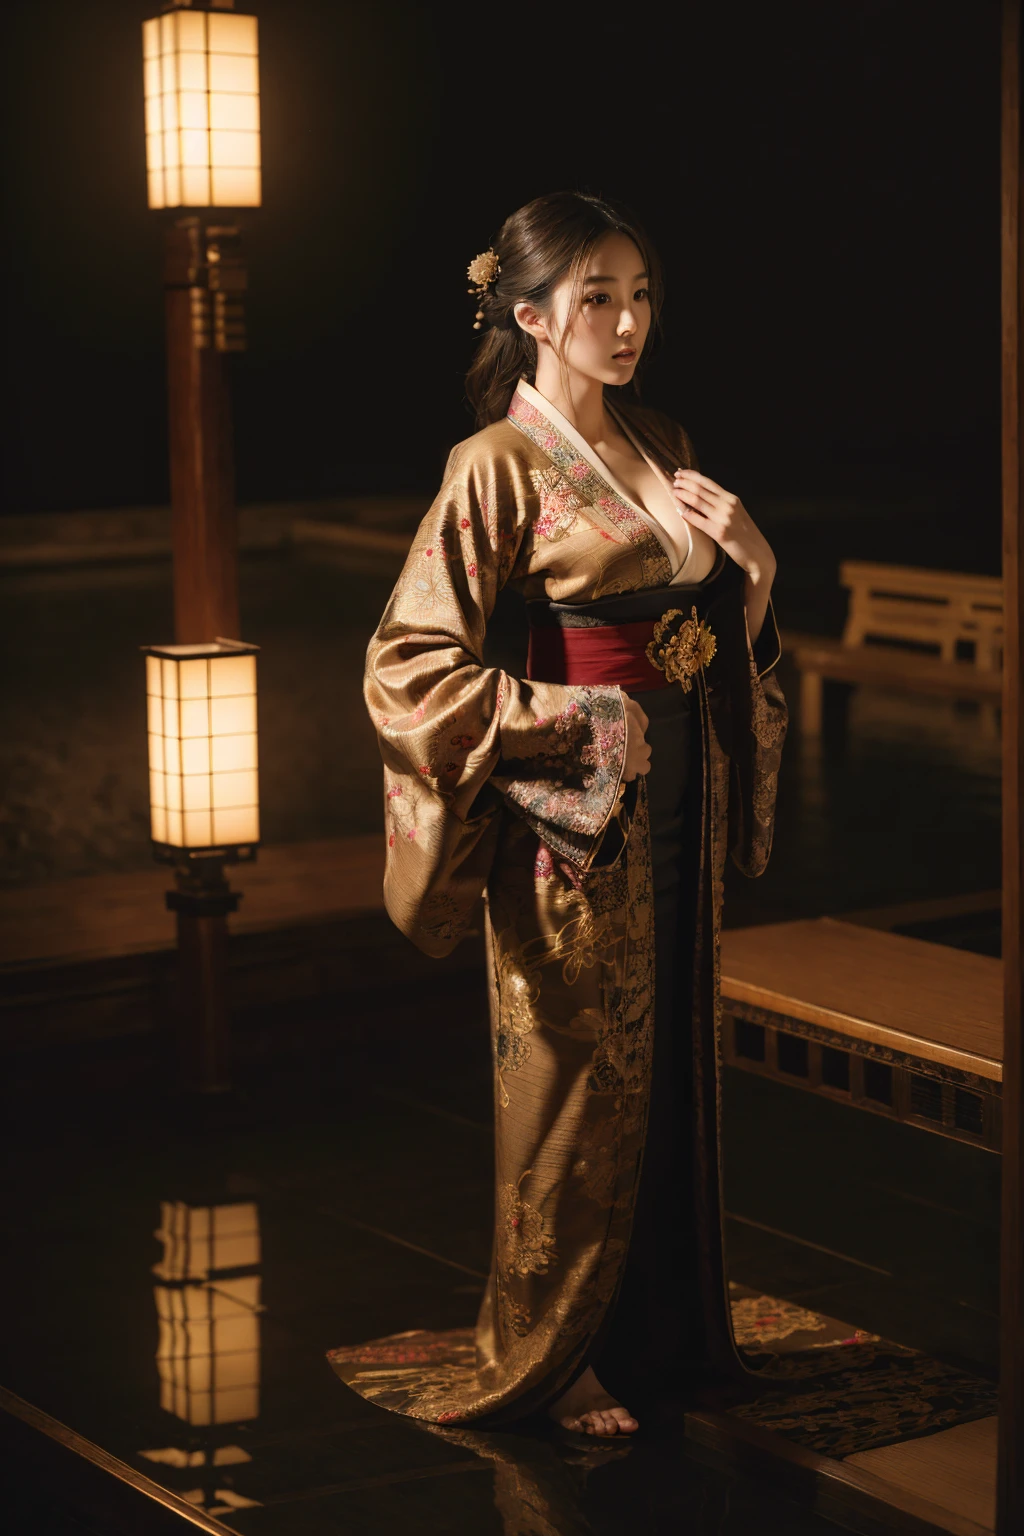 複雑な刺繍が施された華やかな着物を着た美しい日本人女性, 非常に大きな胸, 暗い照明, 映画のような, 芸術作品, 視聴者を見る, 傑作, 非常に詳細な, 8K, 写実的な, 明暗法照明, エレガント, 洗練された, 優雅な, 穏やかな, 神秘的な, 雰囲気のある